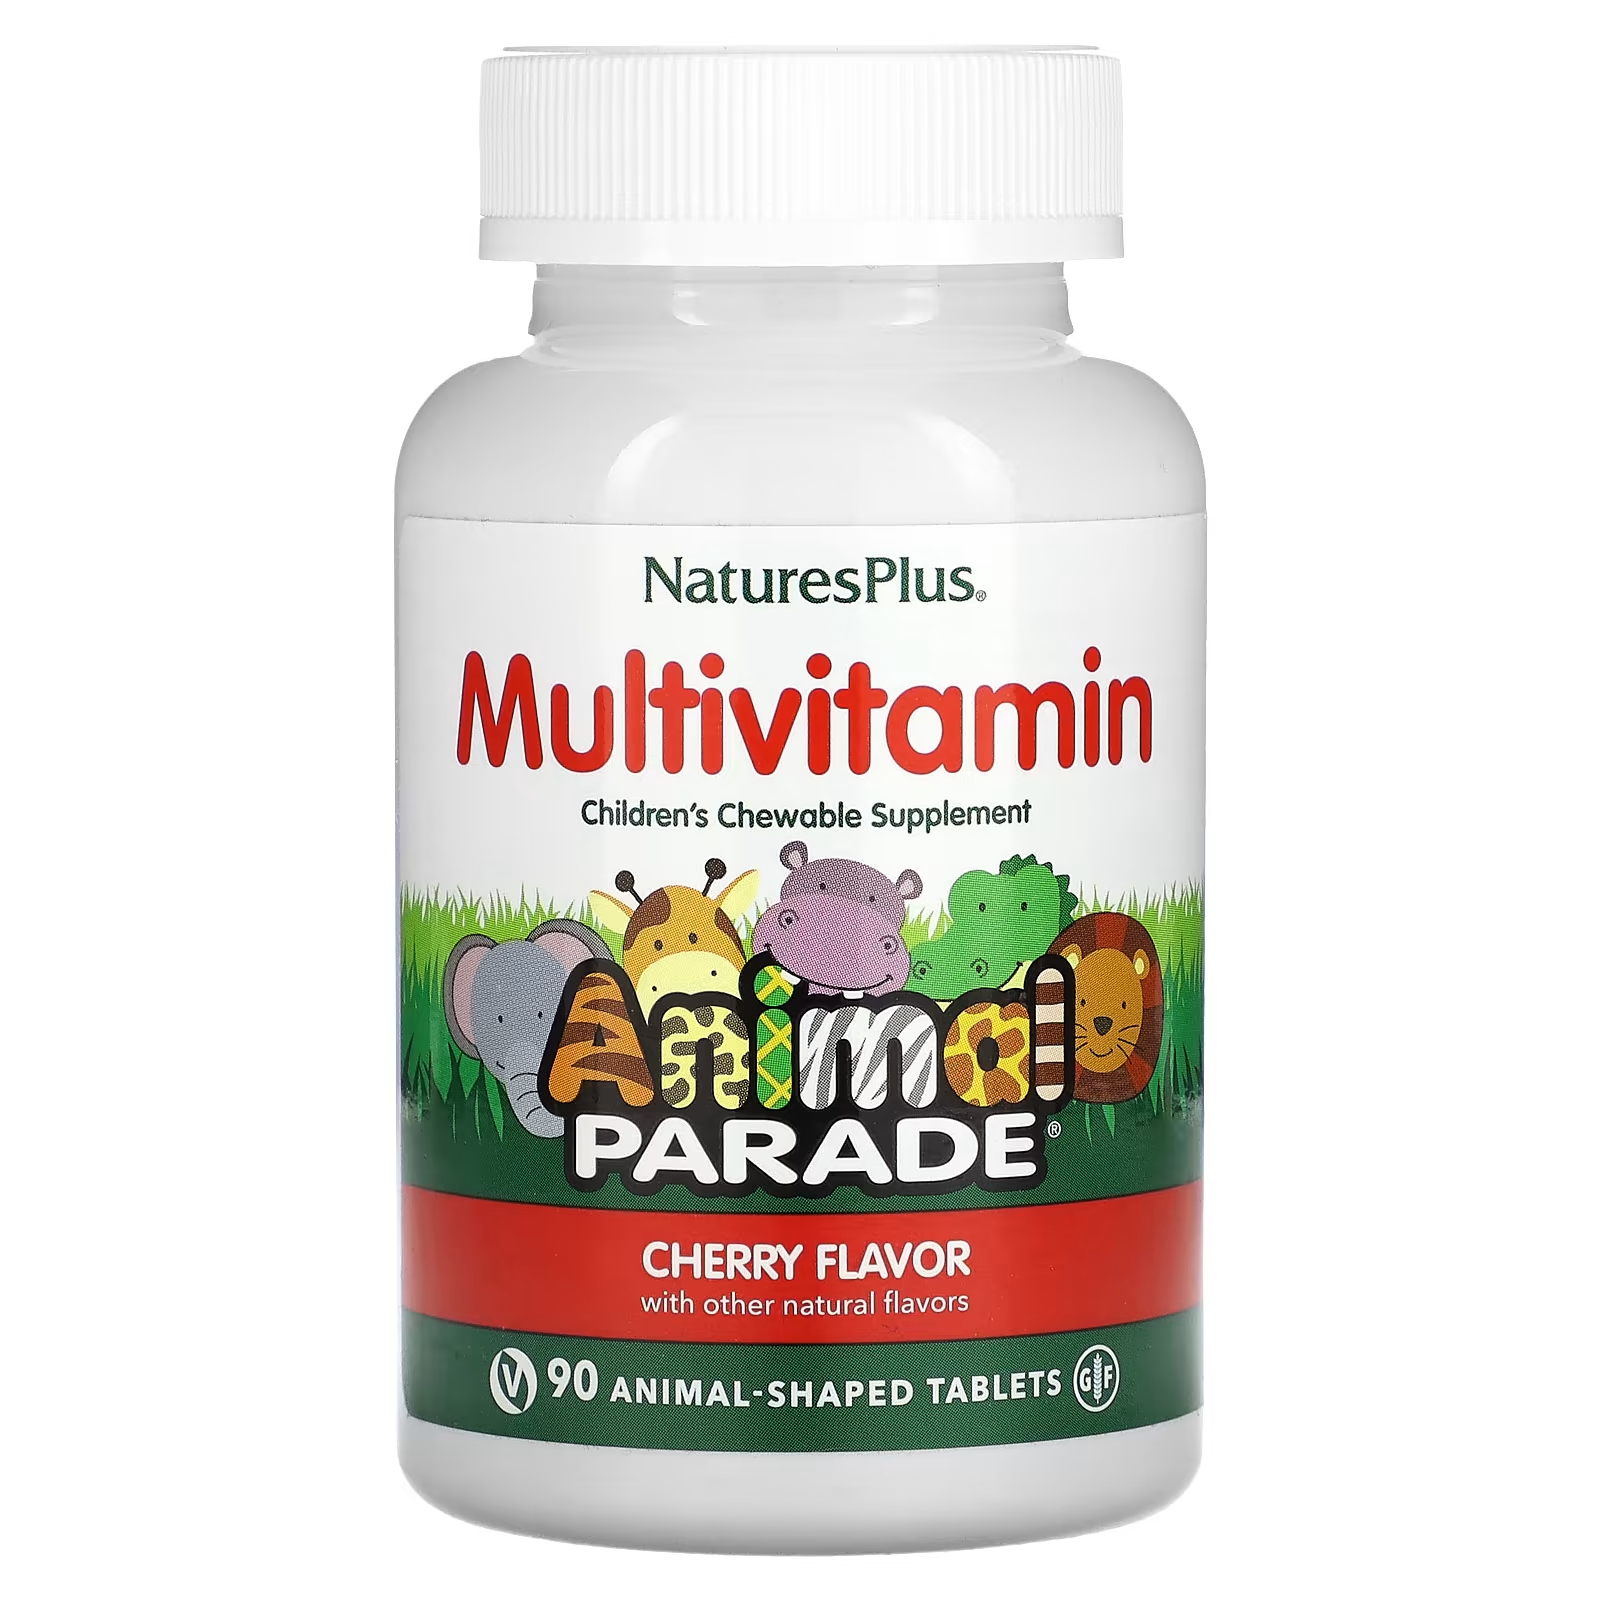 Мультивитаминная добавка NaturesPlus Animal Parade с вишневым вкусом, 90 таблеток в форме животных